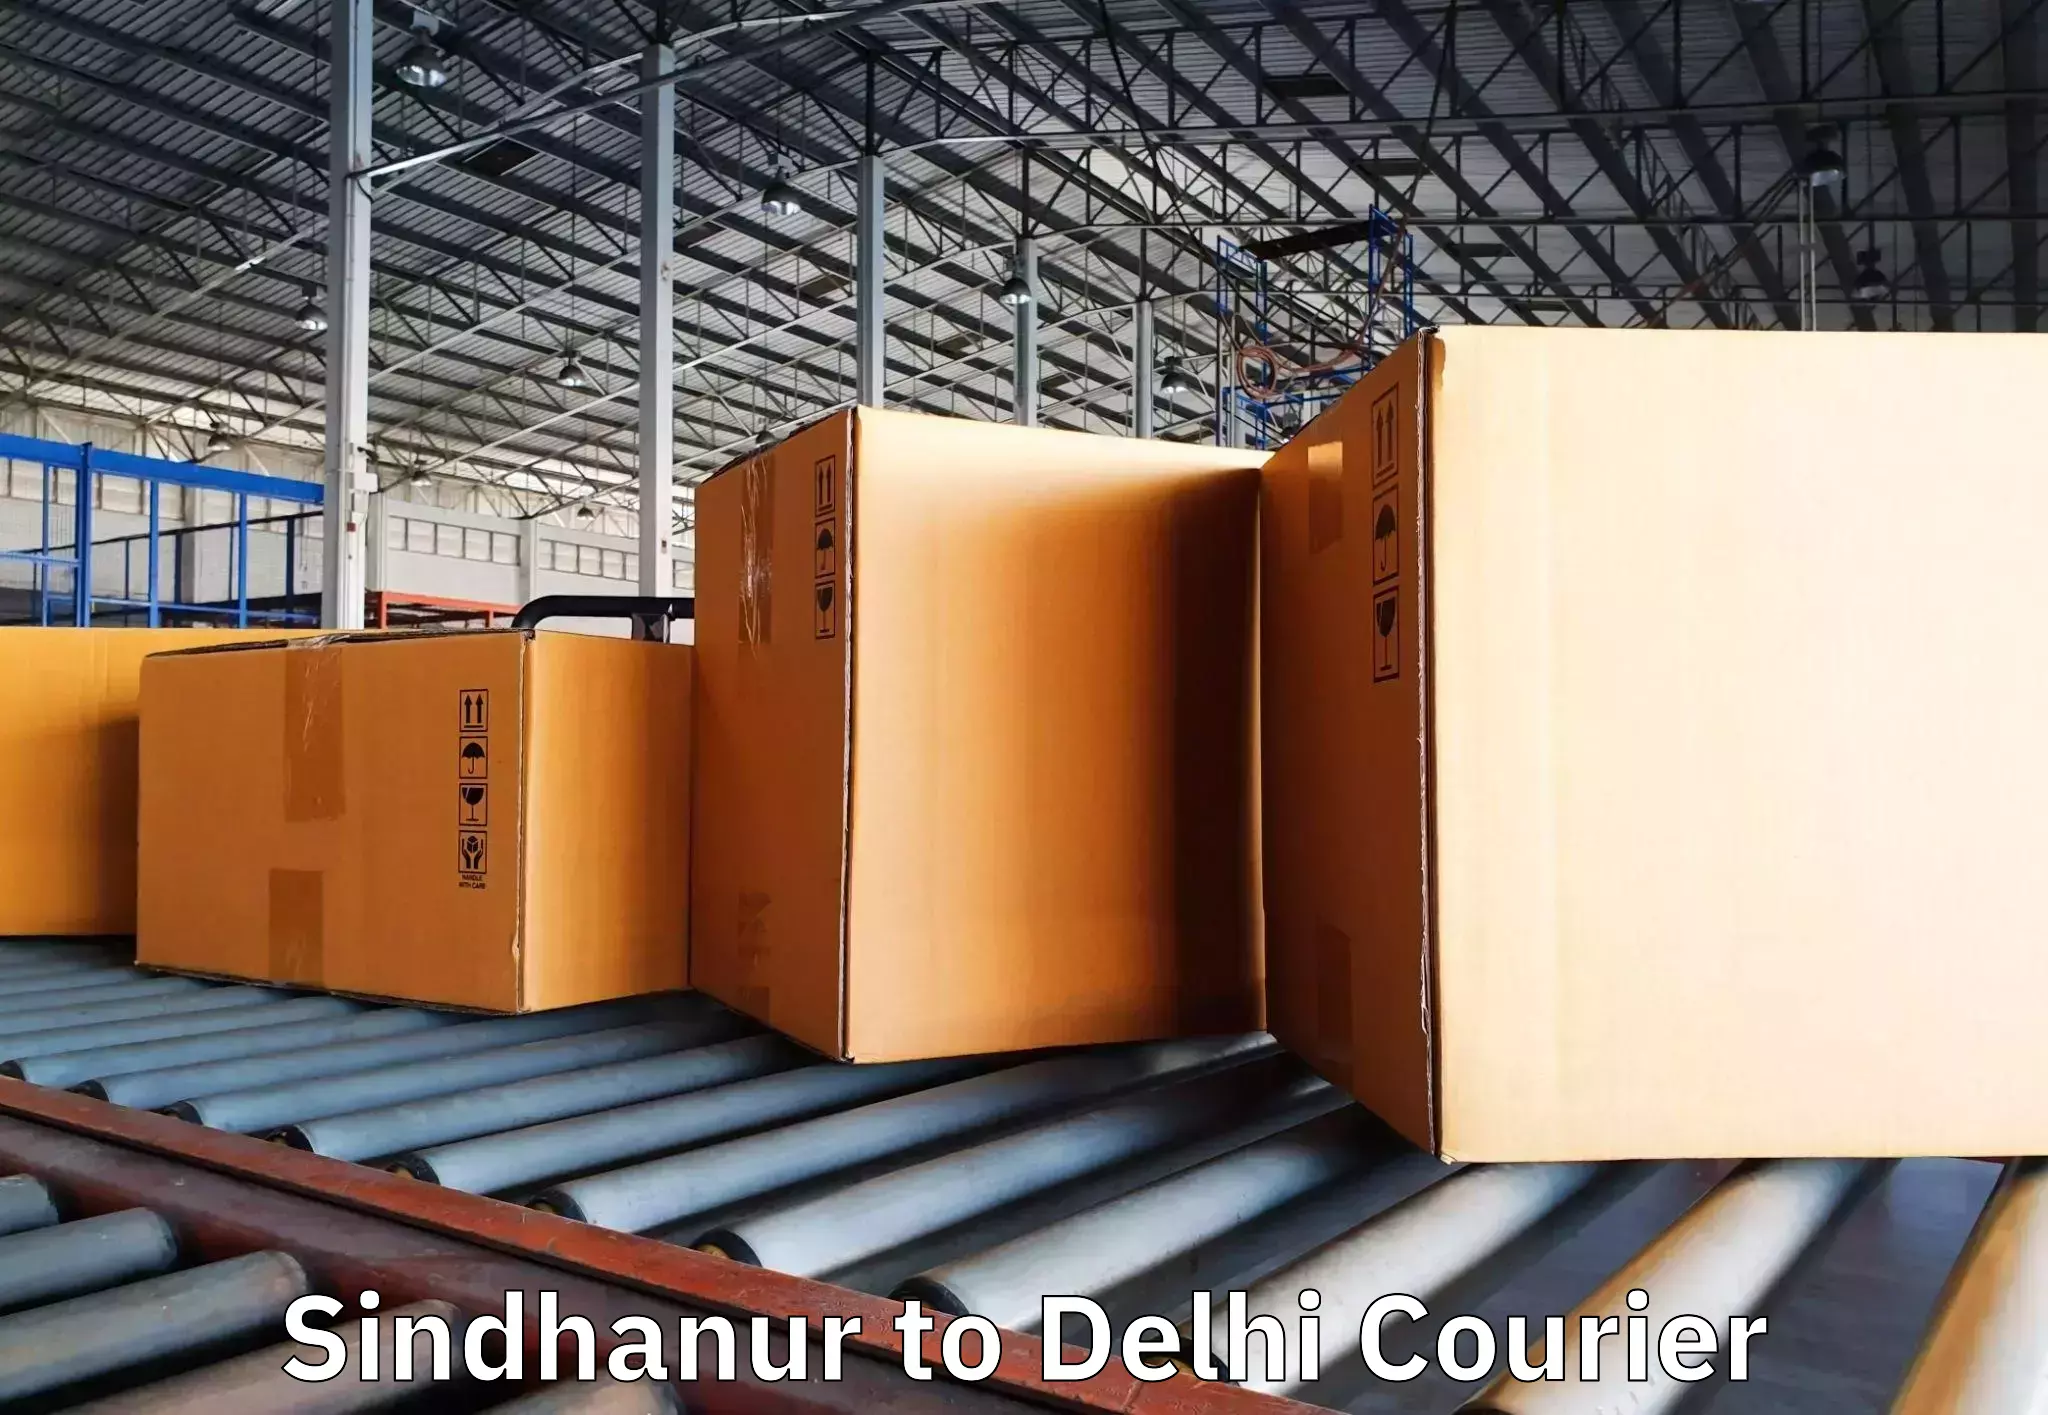 Furniture transport specialists Sindhanur to Delhi